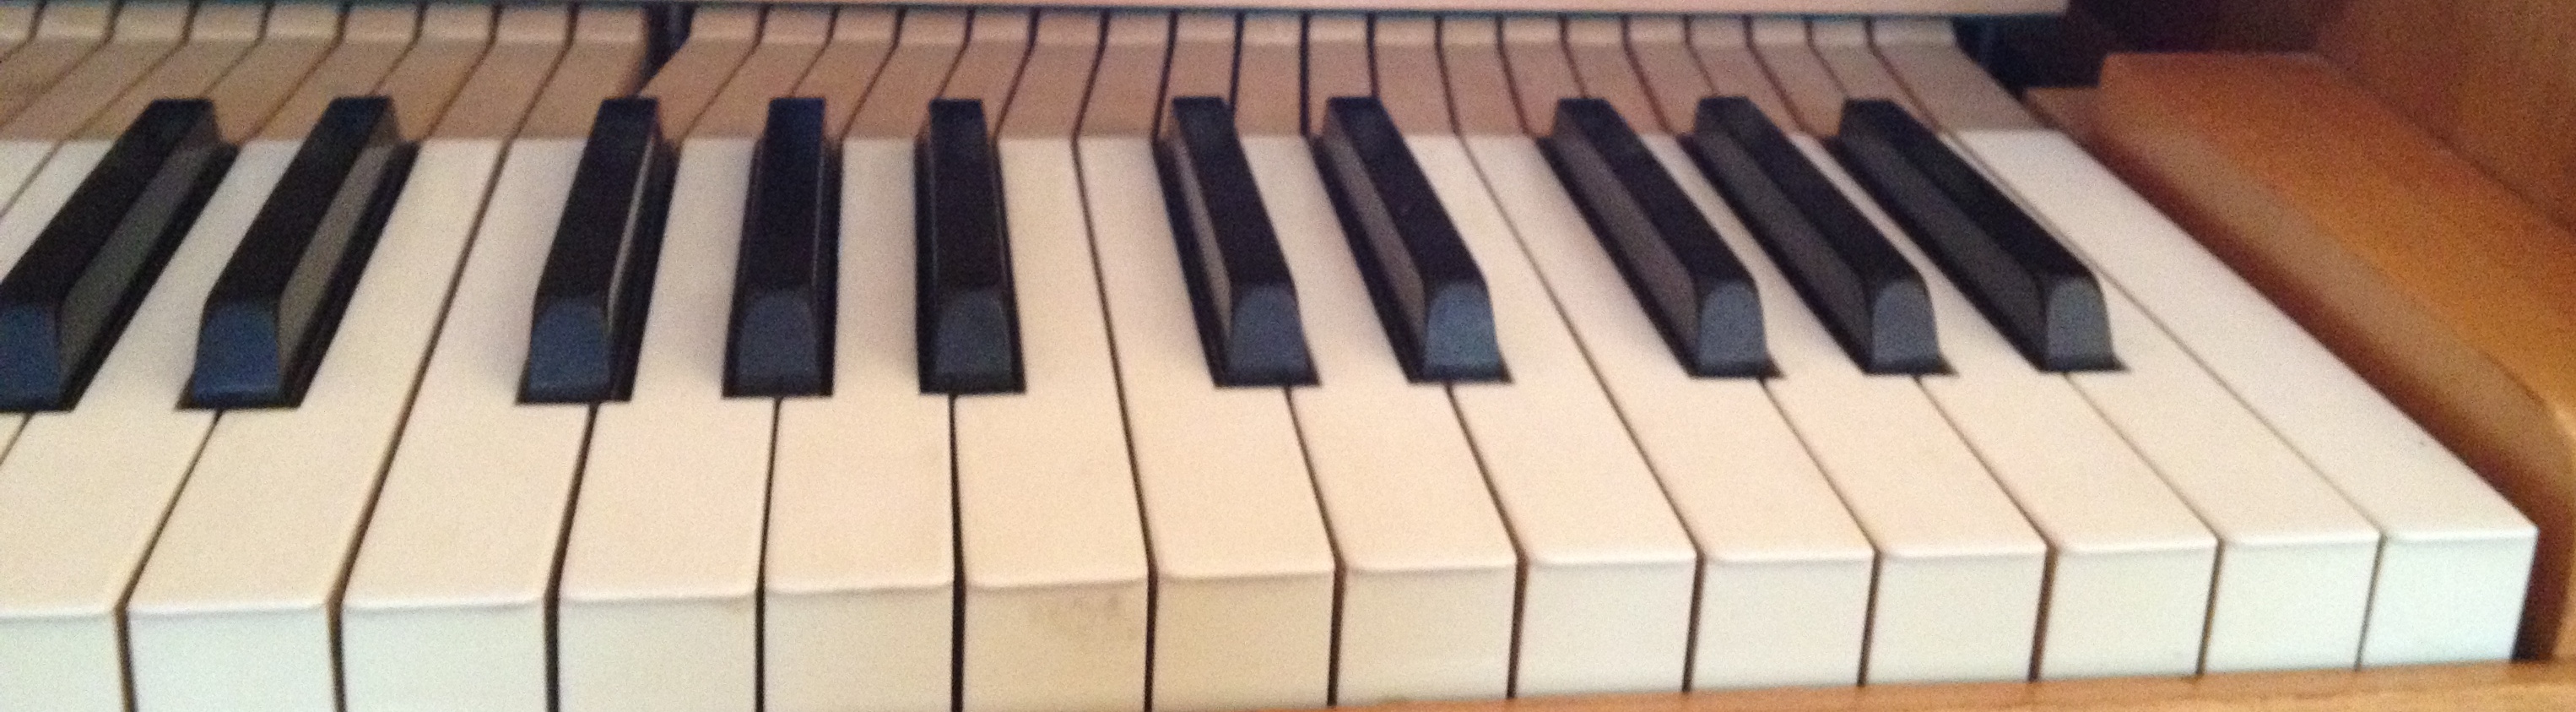 Pianotoetsen...De muziek zit erin verstopt